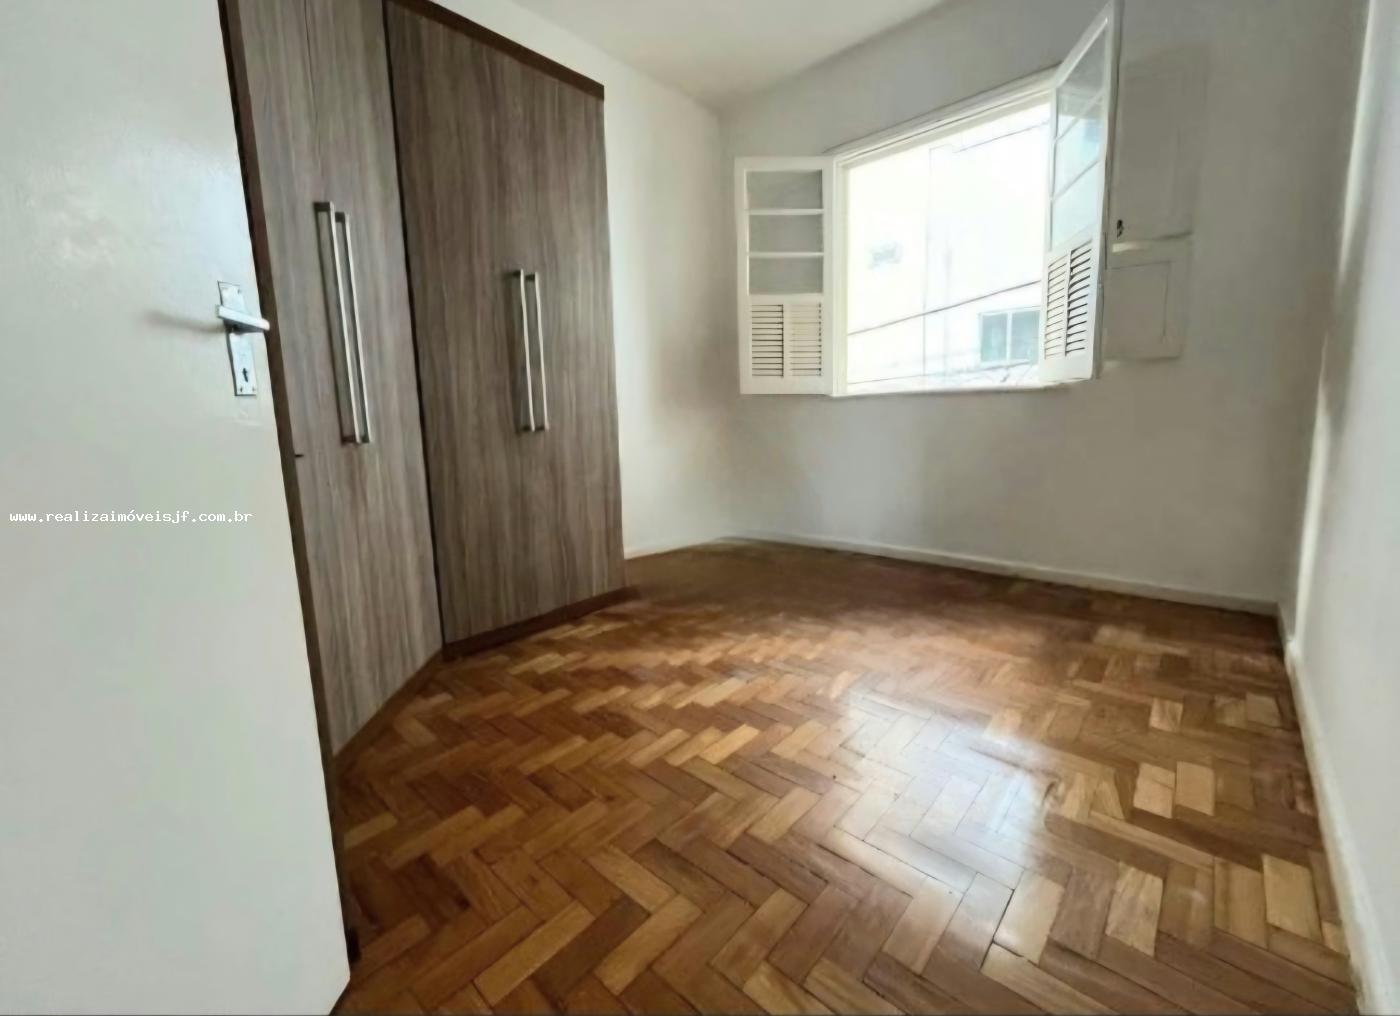 Apartamento, 3 quartos, 95 m² - Foto 2